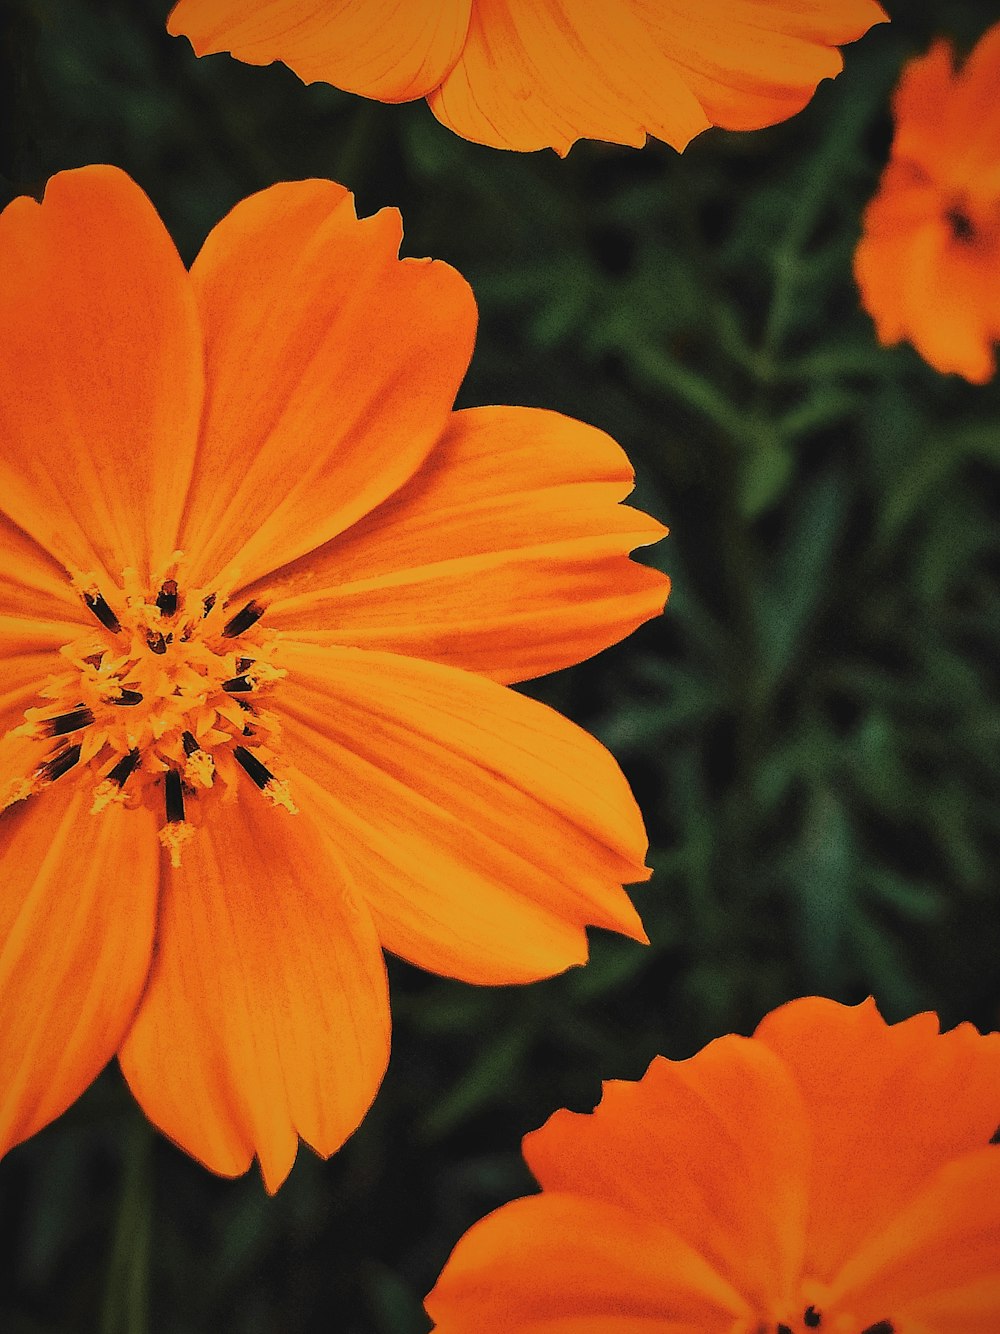 orange flower in tilt shift lens